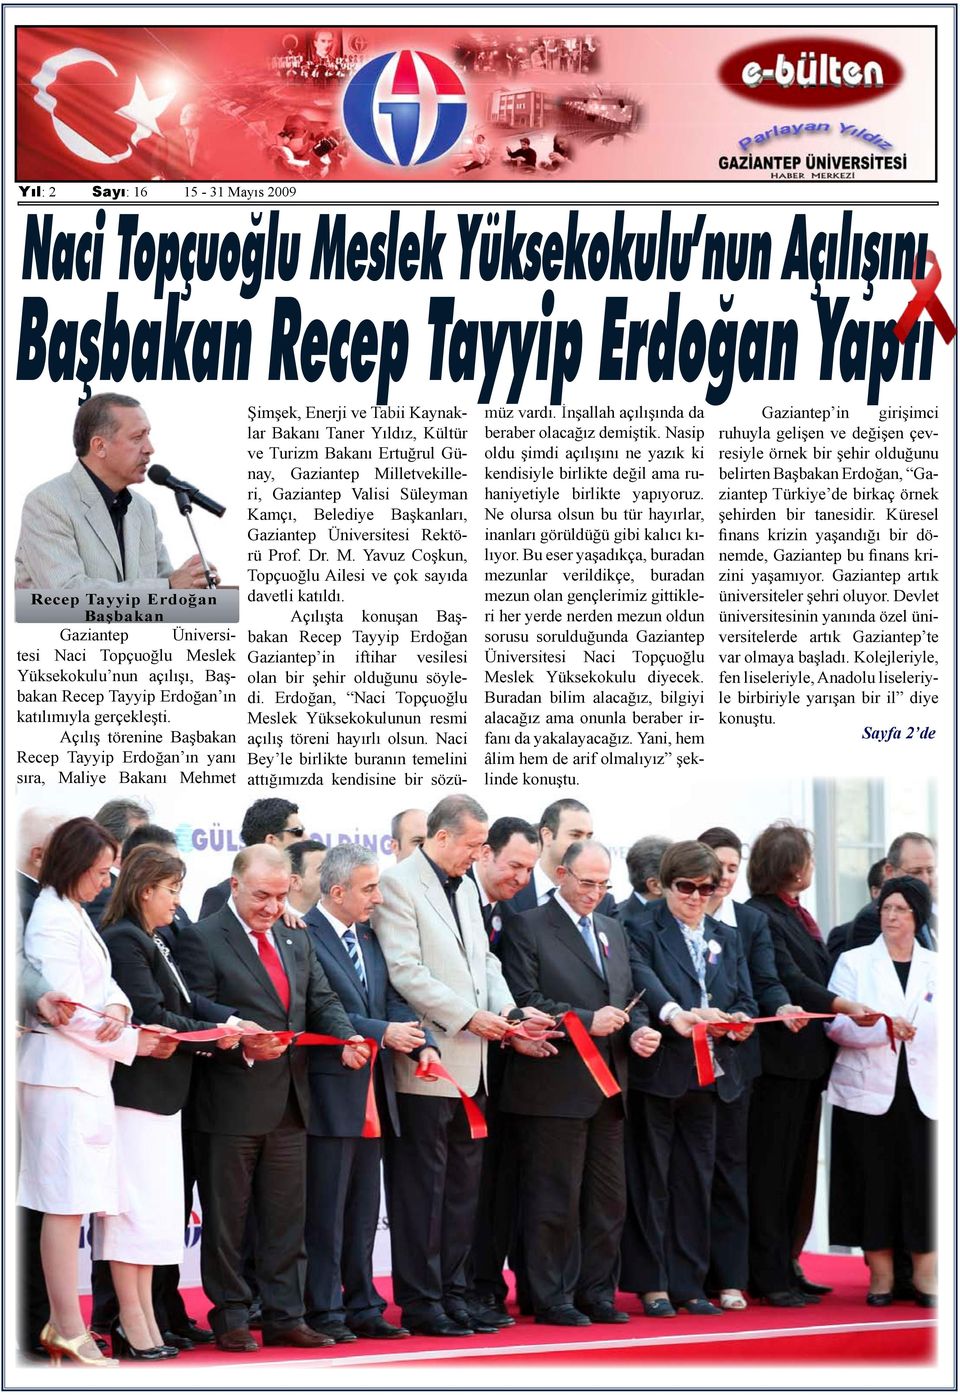 Açılış törenine Başbakan Recep Tayyip Erdoğan ın yanı sıra, Maliye Bakanı Mehmet Şimşek, Enerji ve Tabii Kaynaklar Bakanı Taner Yıldız, Kültür ve Turizm Bakanı Ertuğrul Günay, Gaziantep